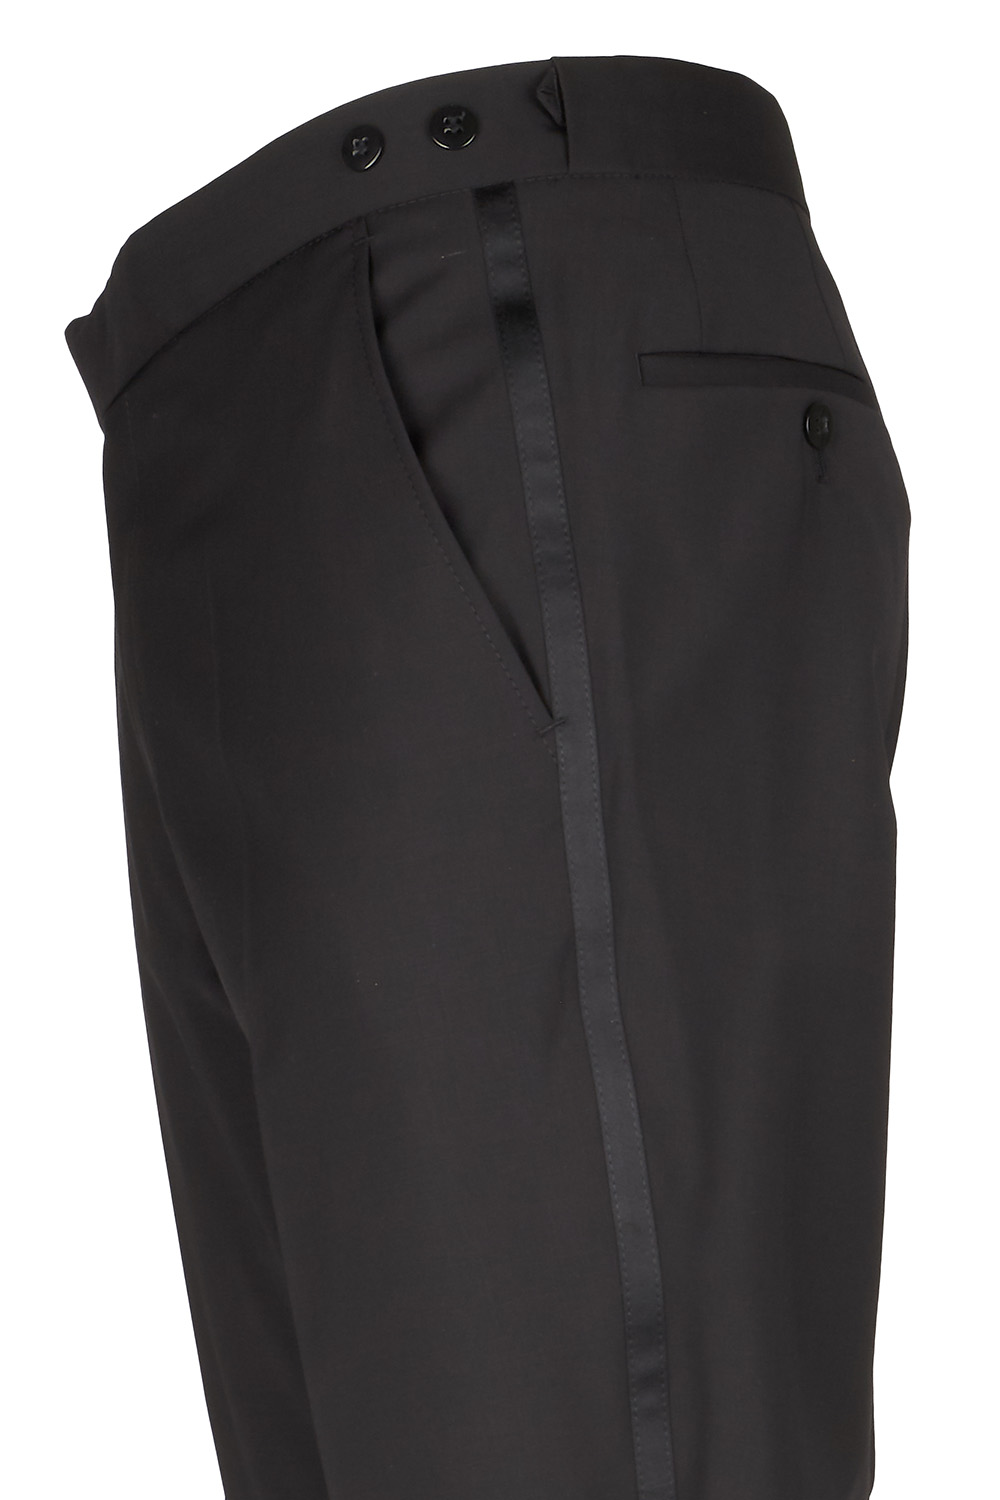 WILVORST slim fit fekete szmoking nadrág részletek 401600-10